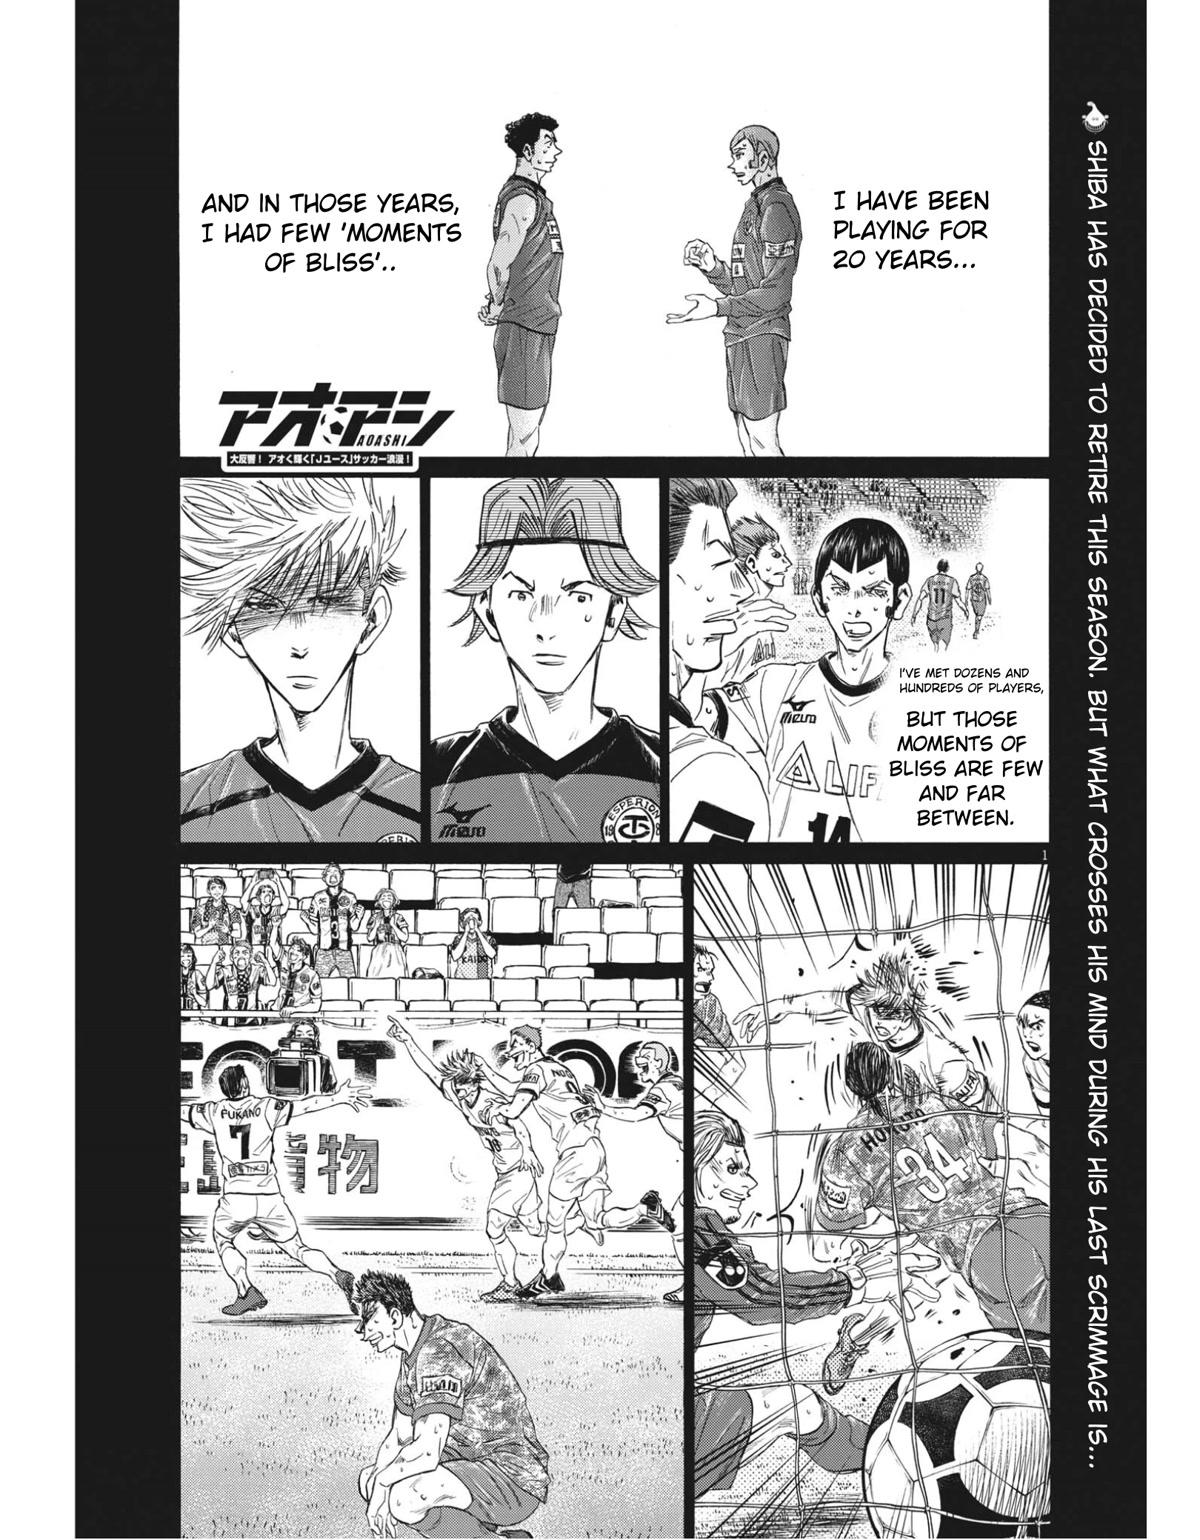 Ao Ashi, Chapter 342 - Ao Ashi Manga Online